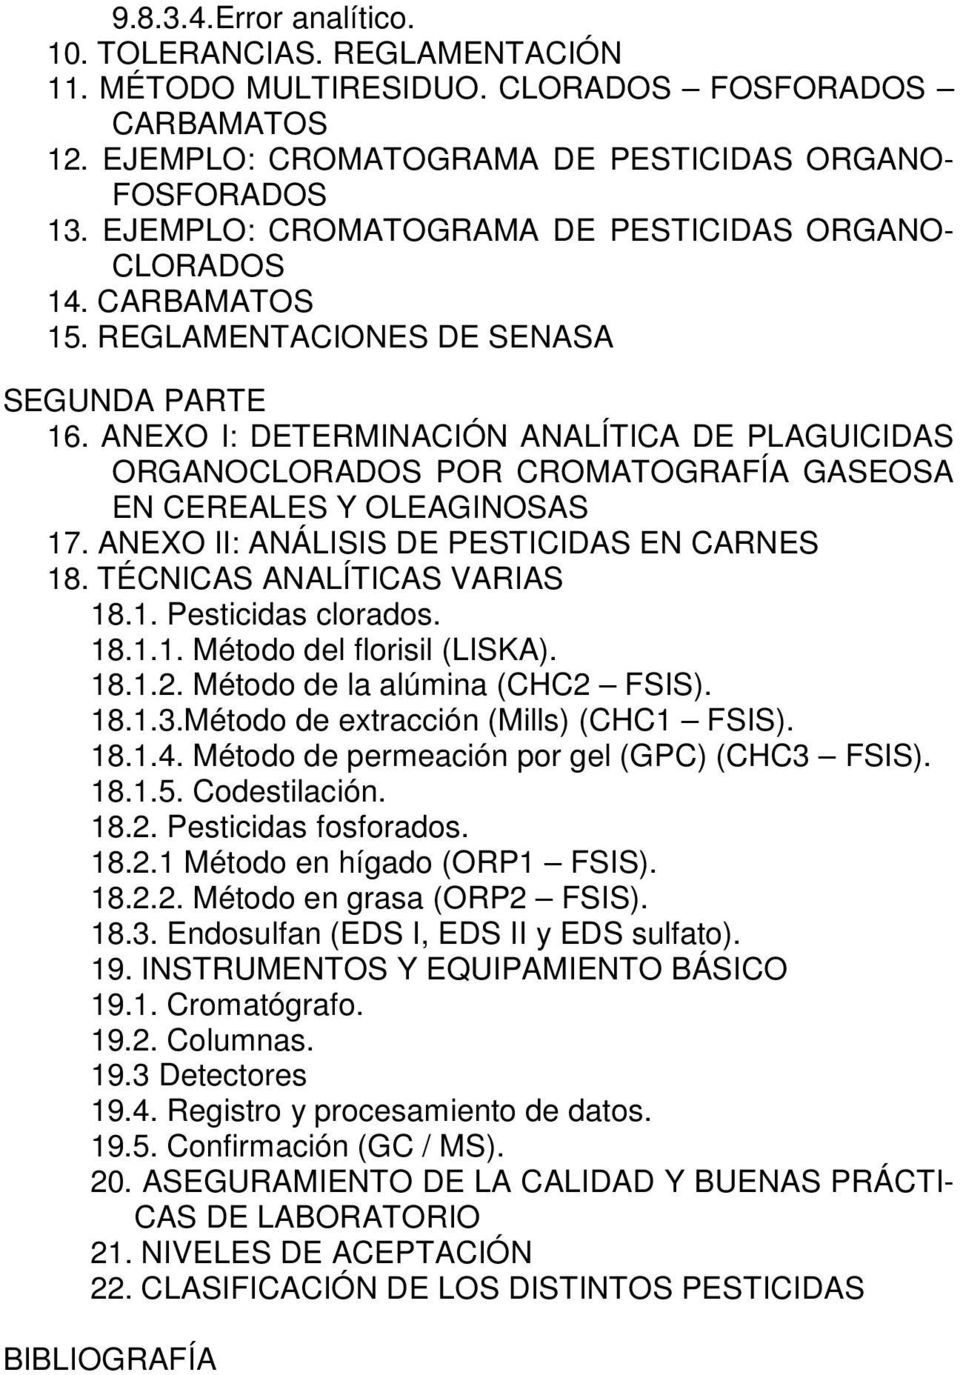 ANEXO I: DETERMINACIÓN ANALÍTICA DE PLAGUICIDAS ORGANOCLORADOS POR CROMATOGRAFÍA GASEOSA EN CEREALES Y OLEAGINOSAS 17. ANEXO II: ANÁLISIS DE PESTICIDAS EN CARNES 18. TÉCNICAS ANALÍTICAS VARIAS 18.1. Pesticidas clorados.